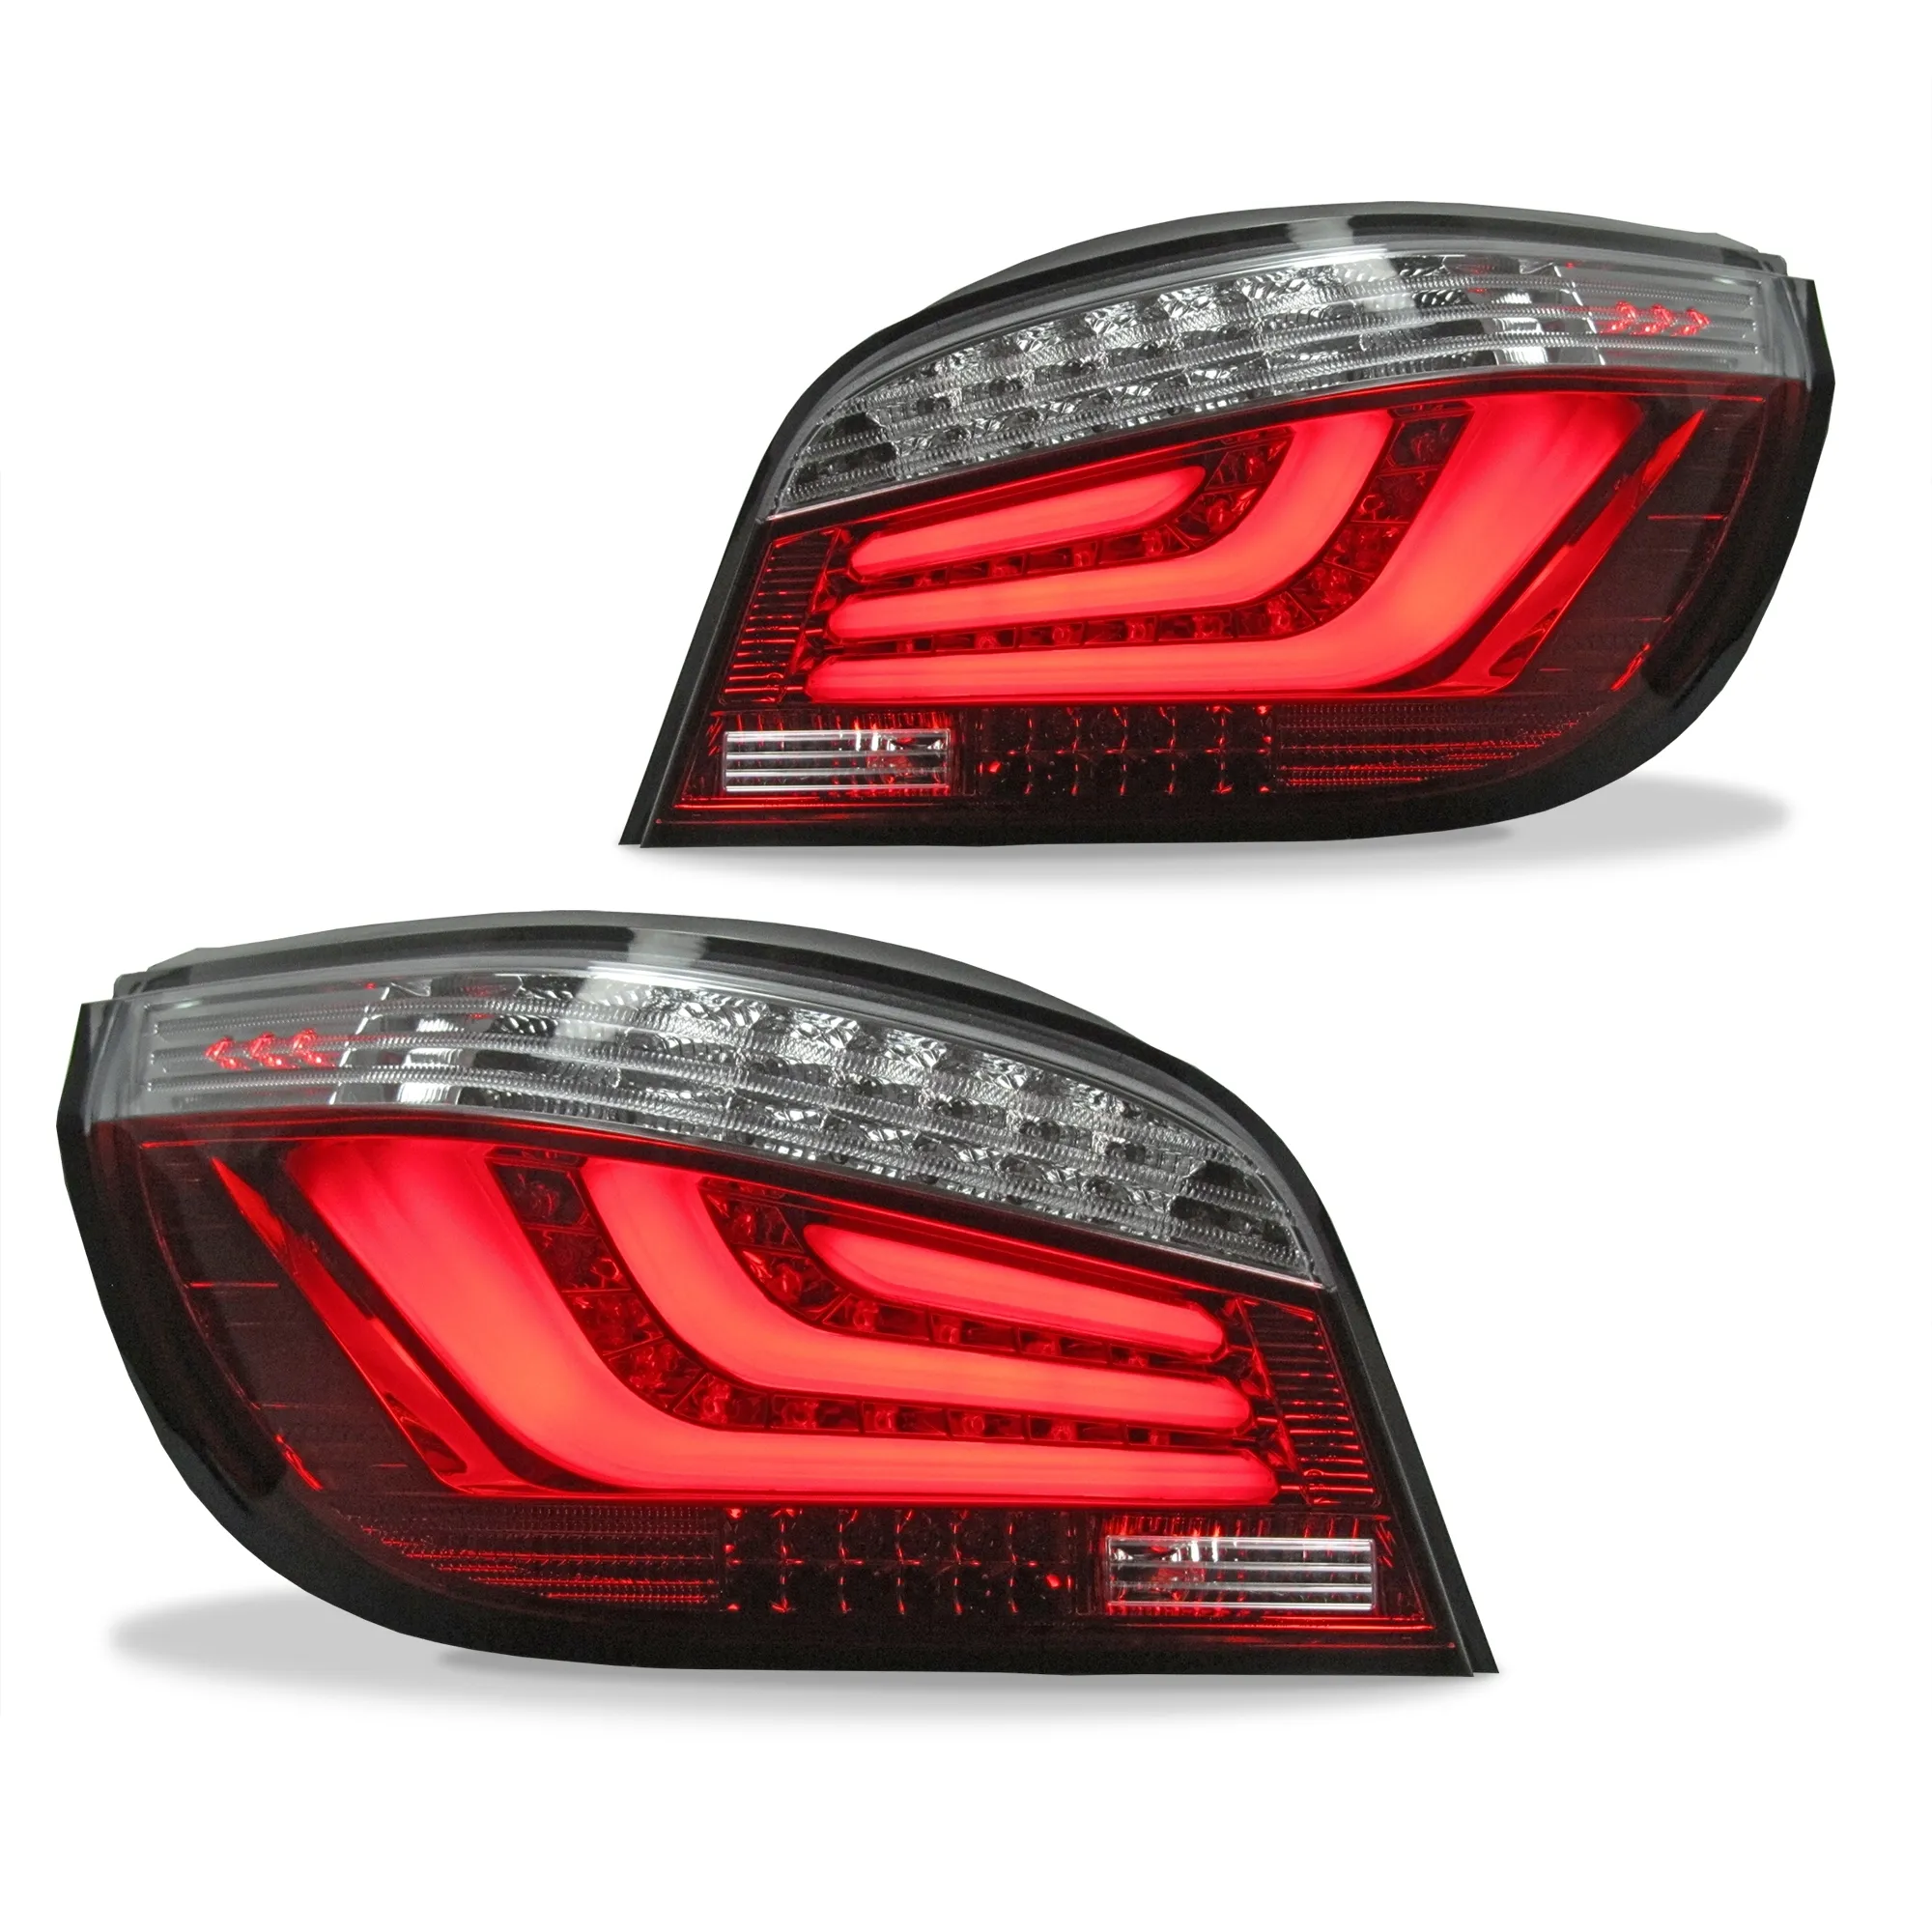 Original LED Lightbar Rückleuchten Rot SET Links Rechts für BMW 5er E60 03-07